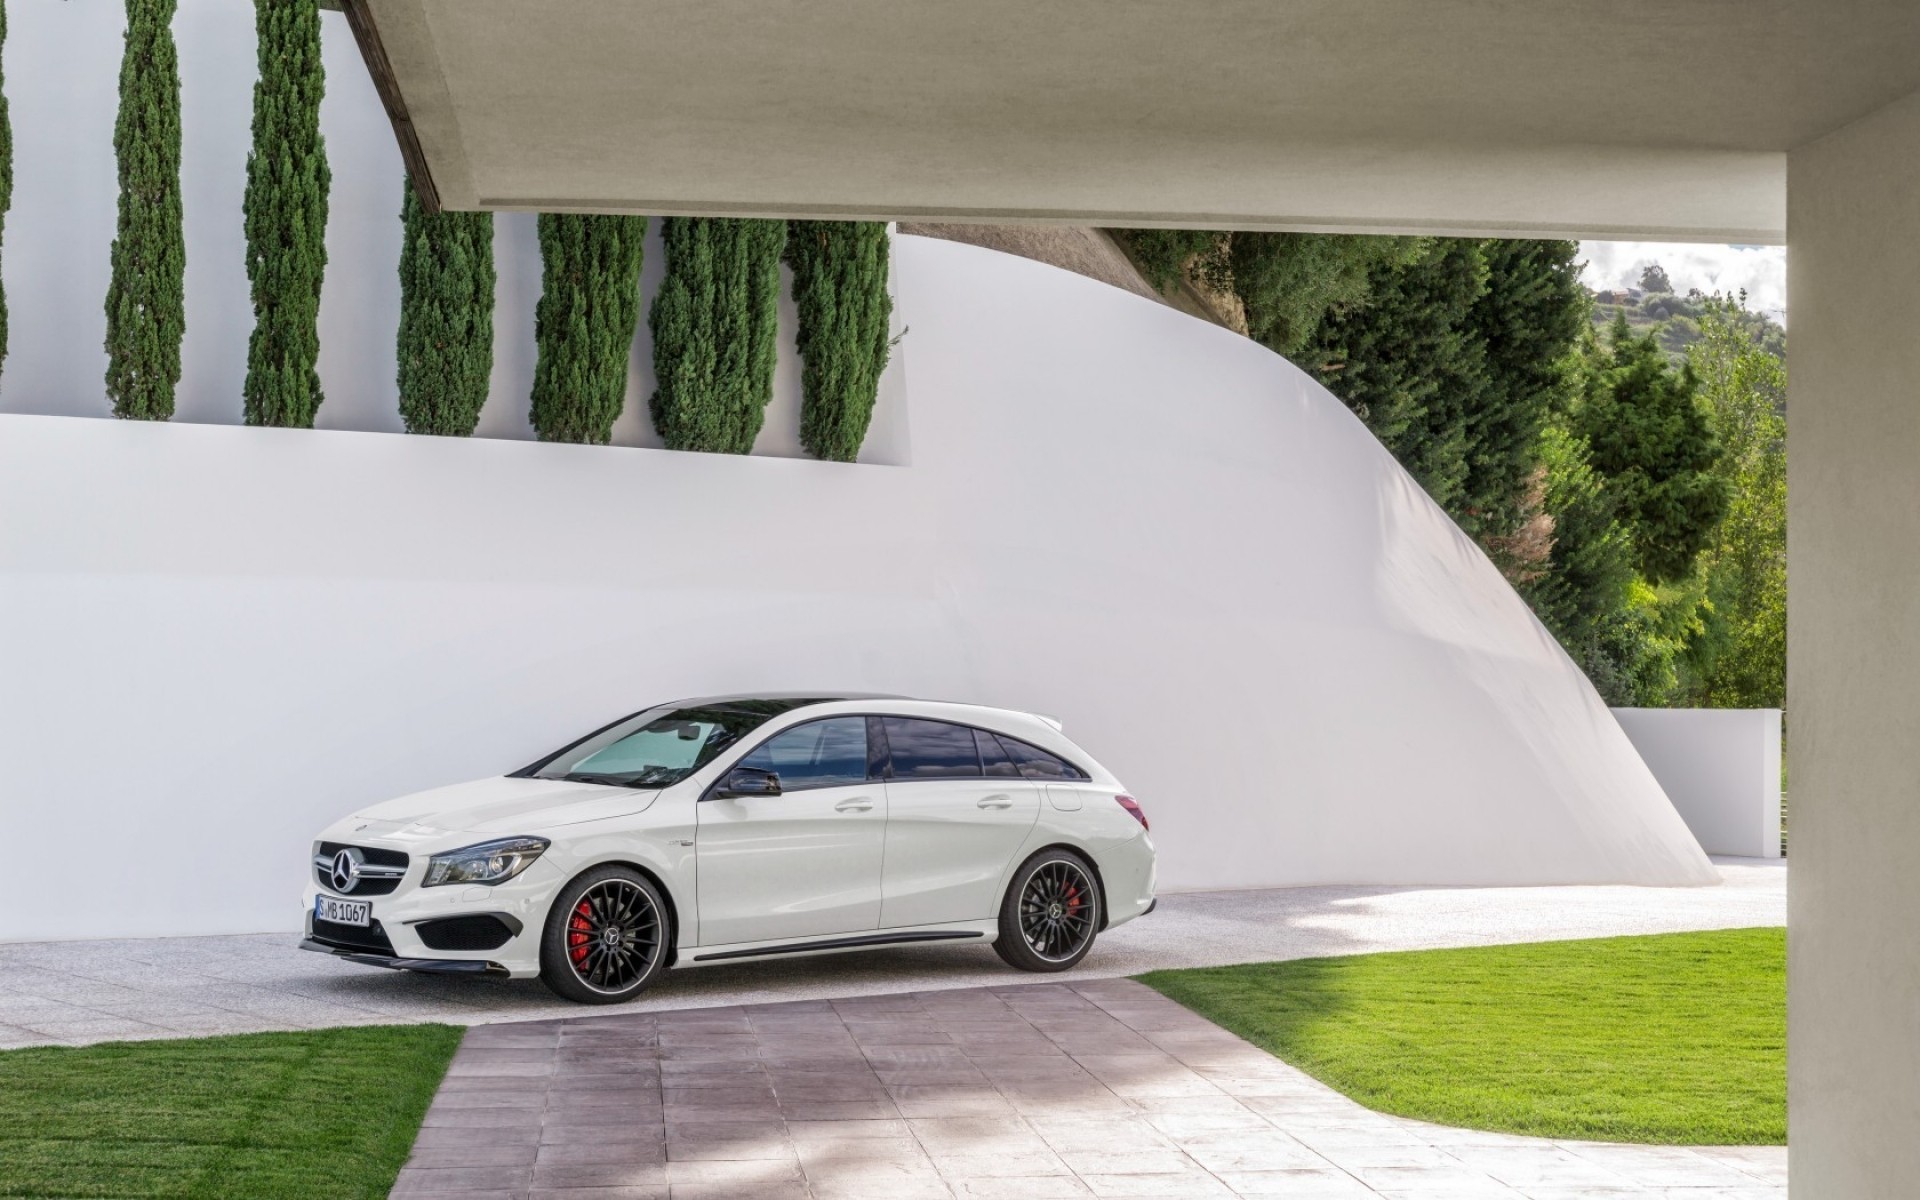 Mercedes-benz Cla-class , HD Wallpaper & Backgrounds